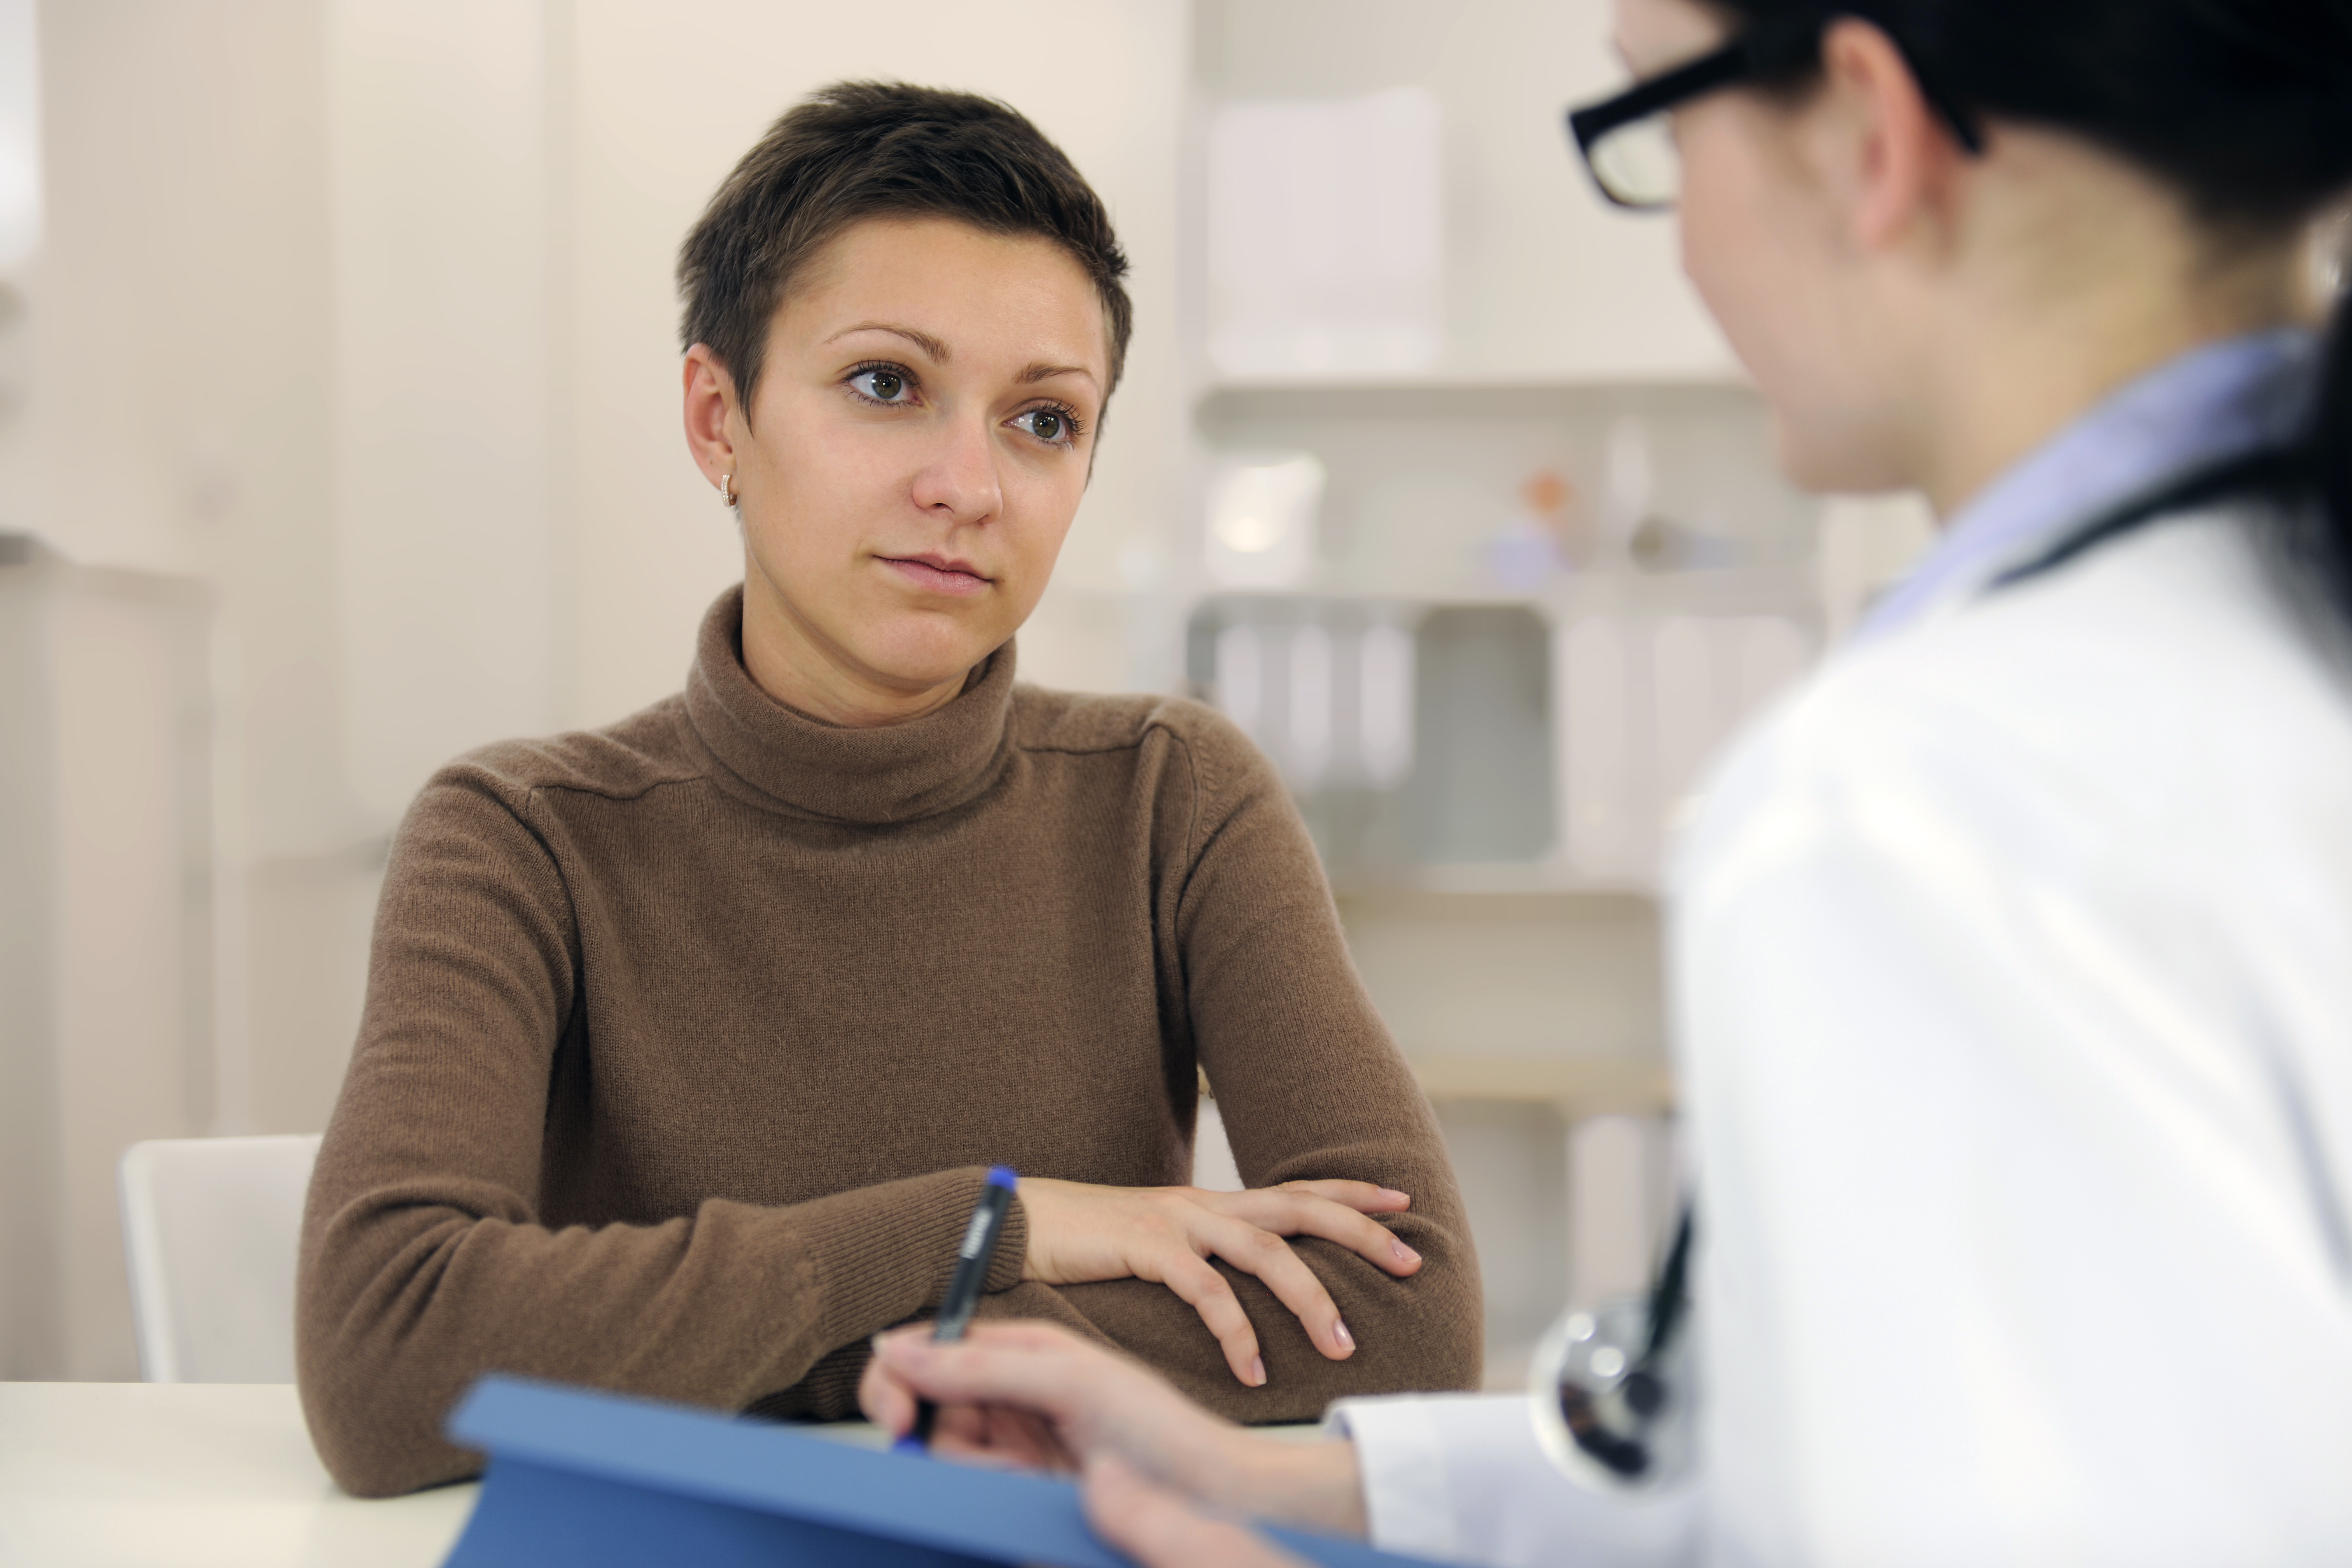 Hepatitis C Screening: Questions for the doctor 